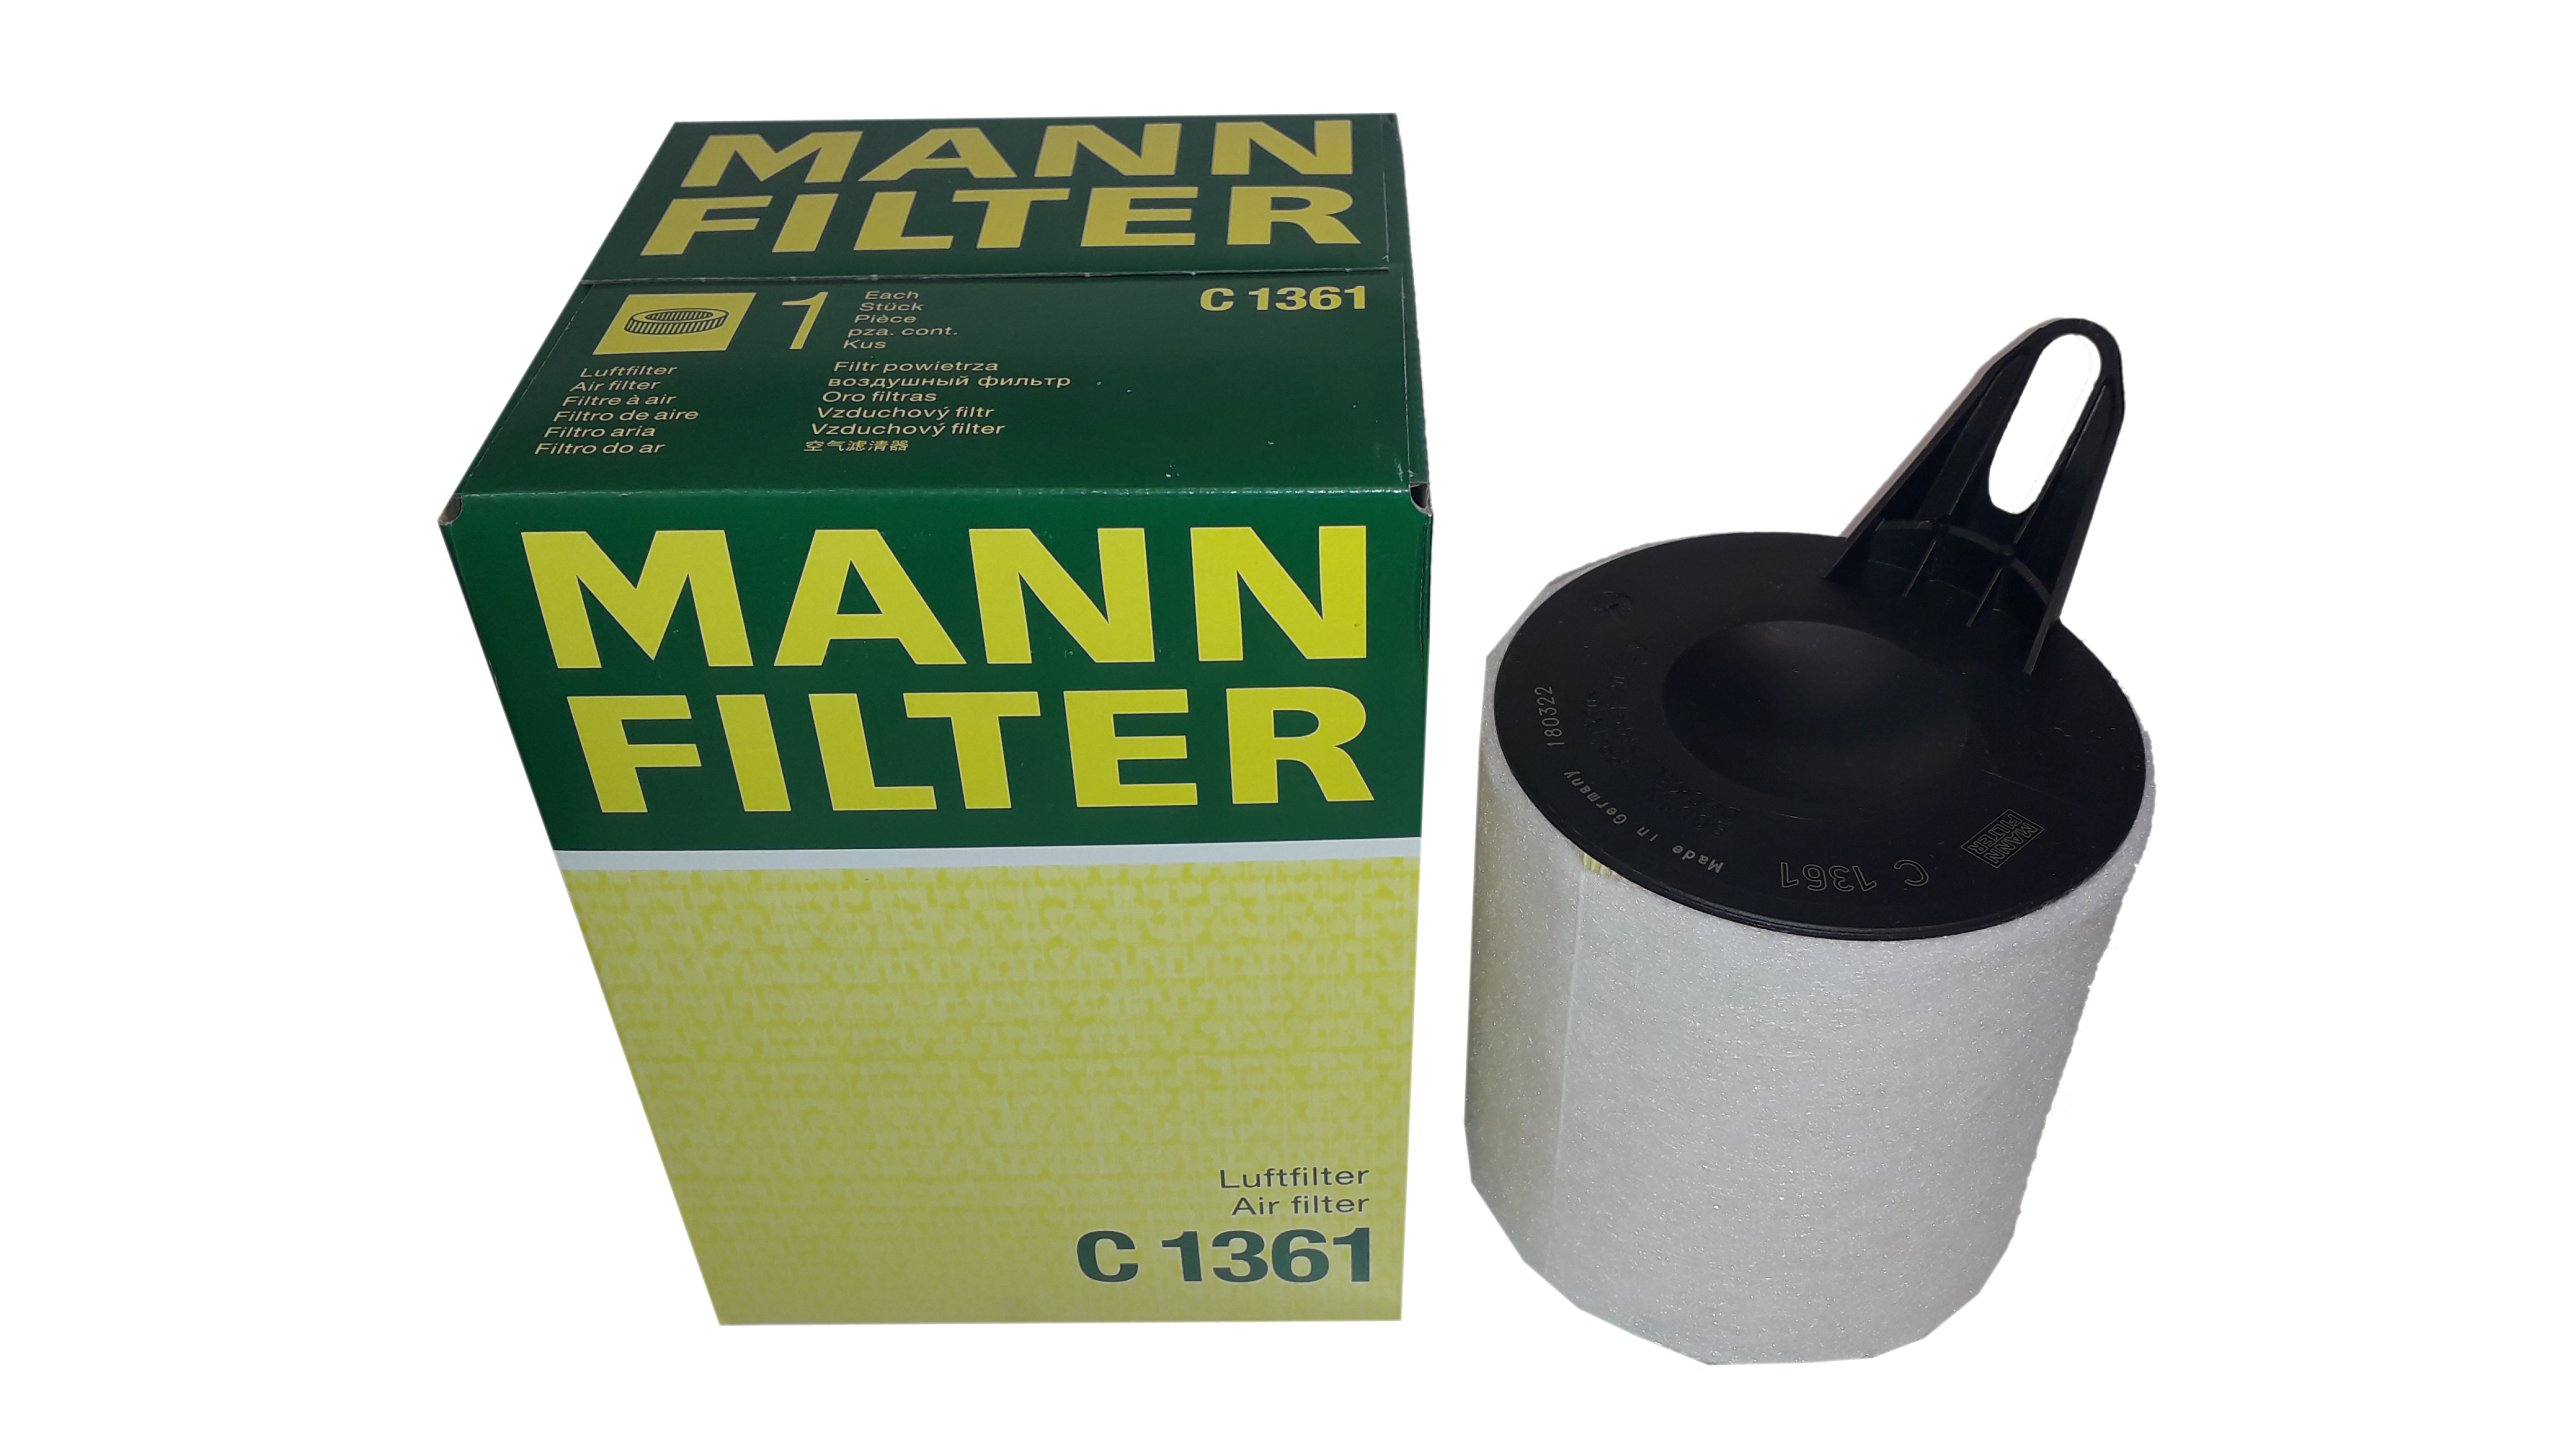 Mann filter воздушный фильтр. Mann c35003 воздушный фильтр. Фильтр воздушный Манн фильтр c1465. Mann c1361. Mann фильтр c36840/1.